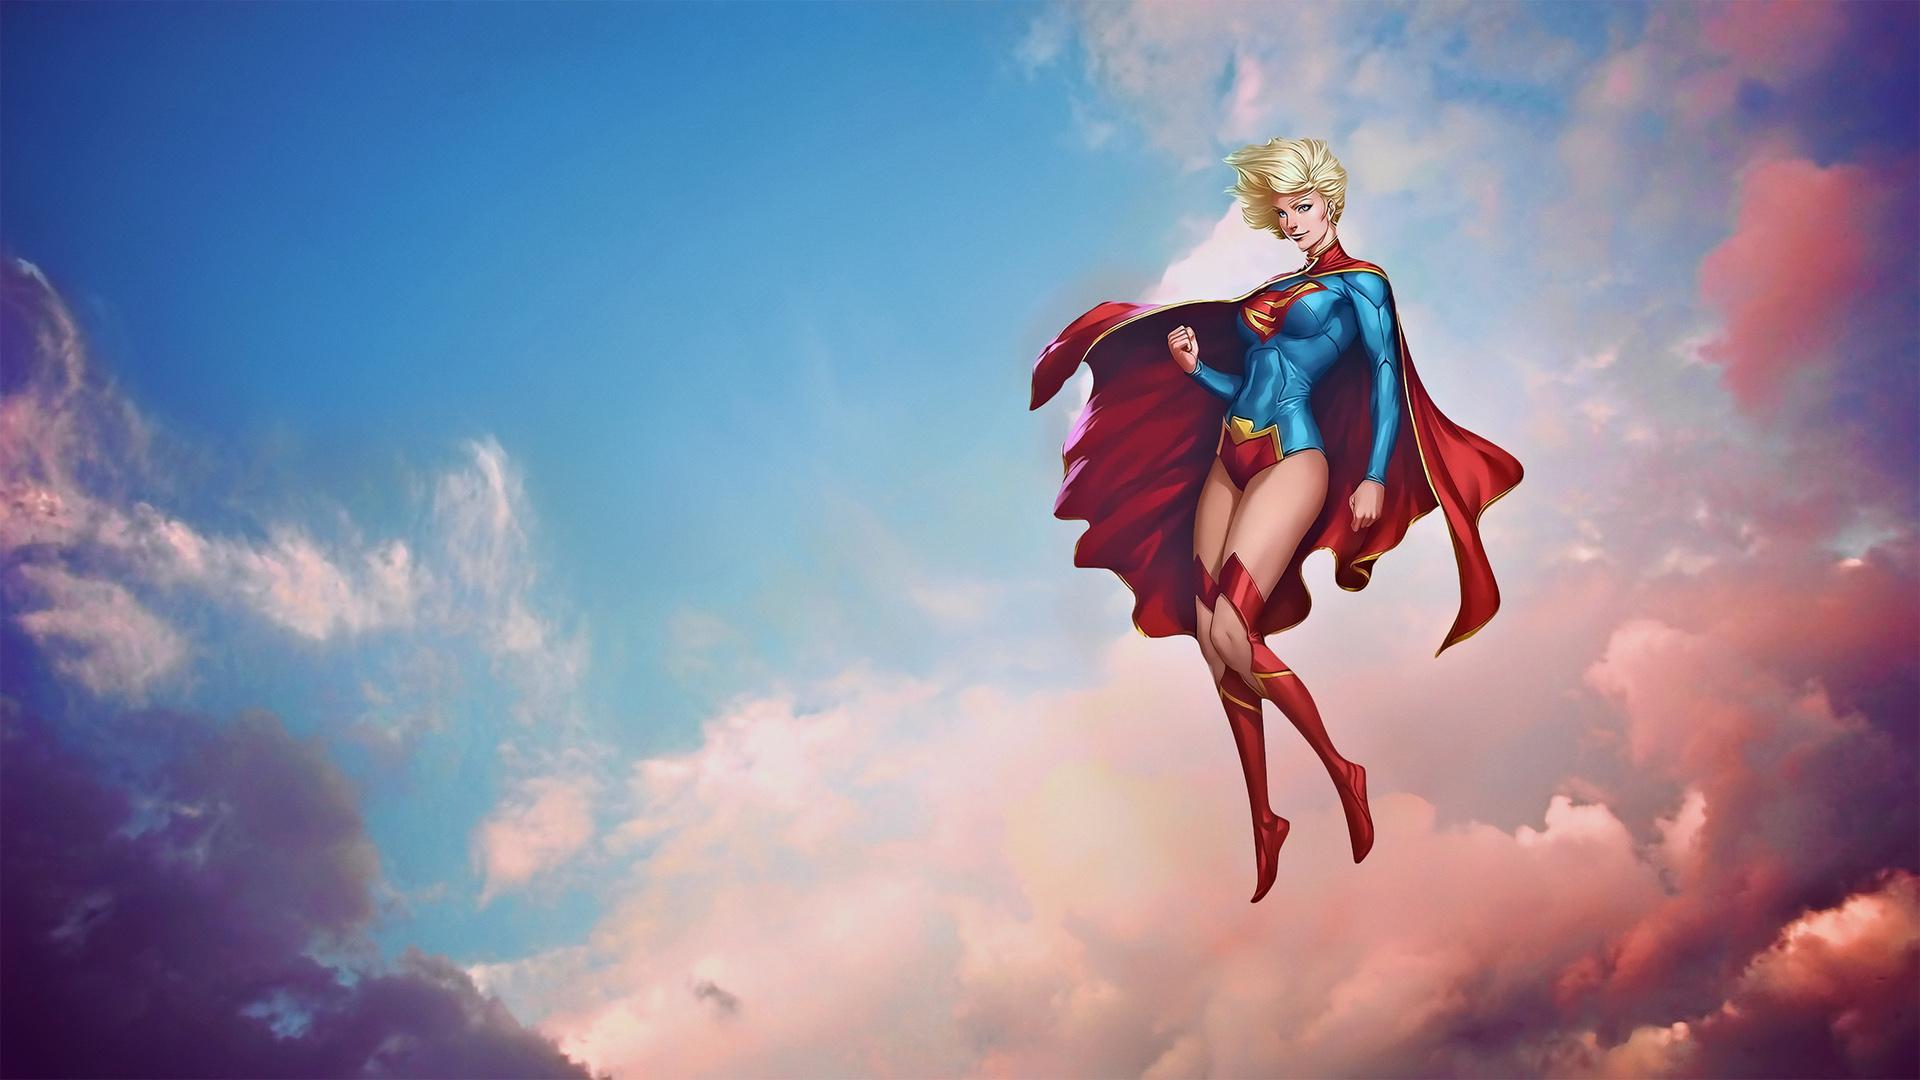 超人和超女动漫角色4k高清海报插画壁纸-桌面壁纸下载-云猫壁纸网